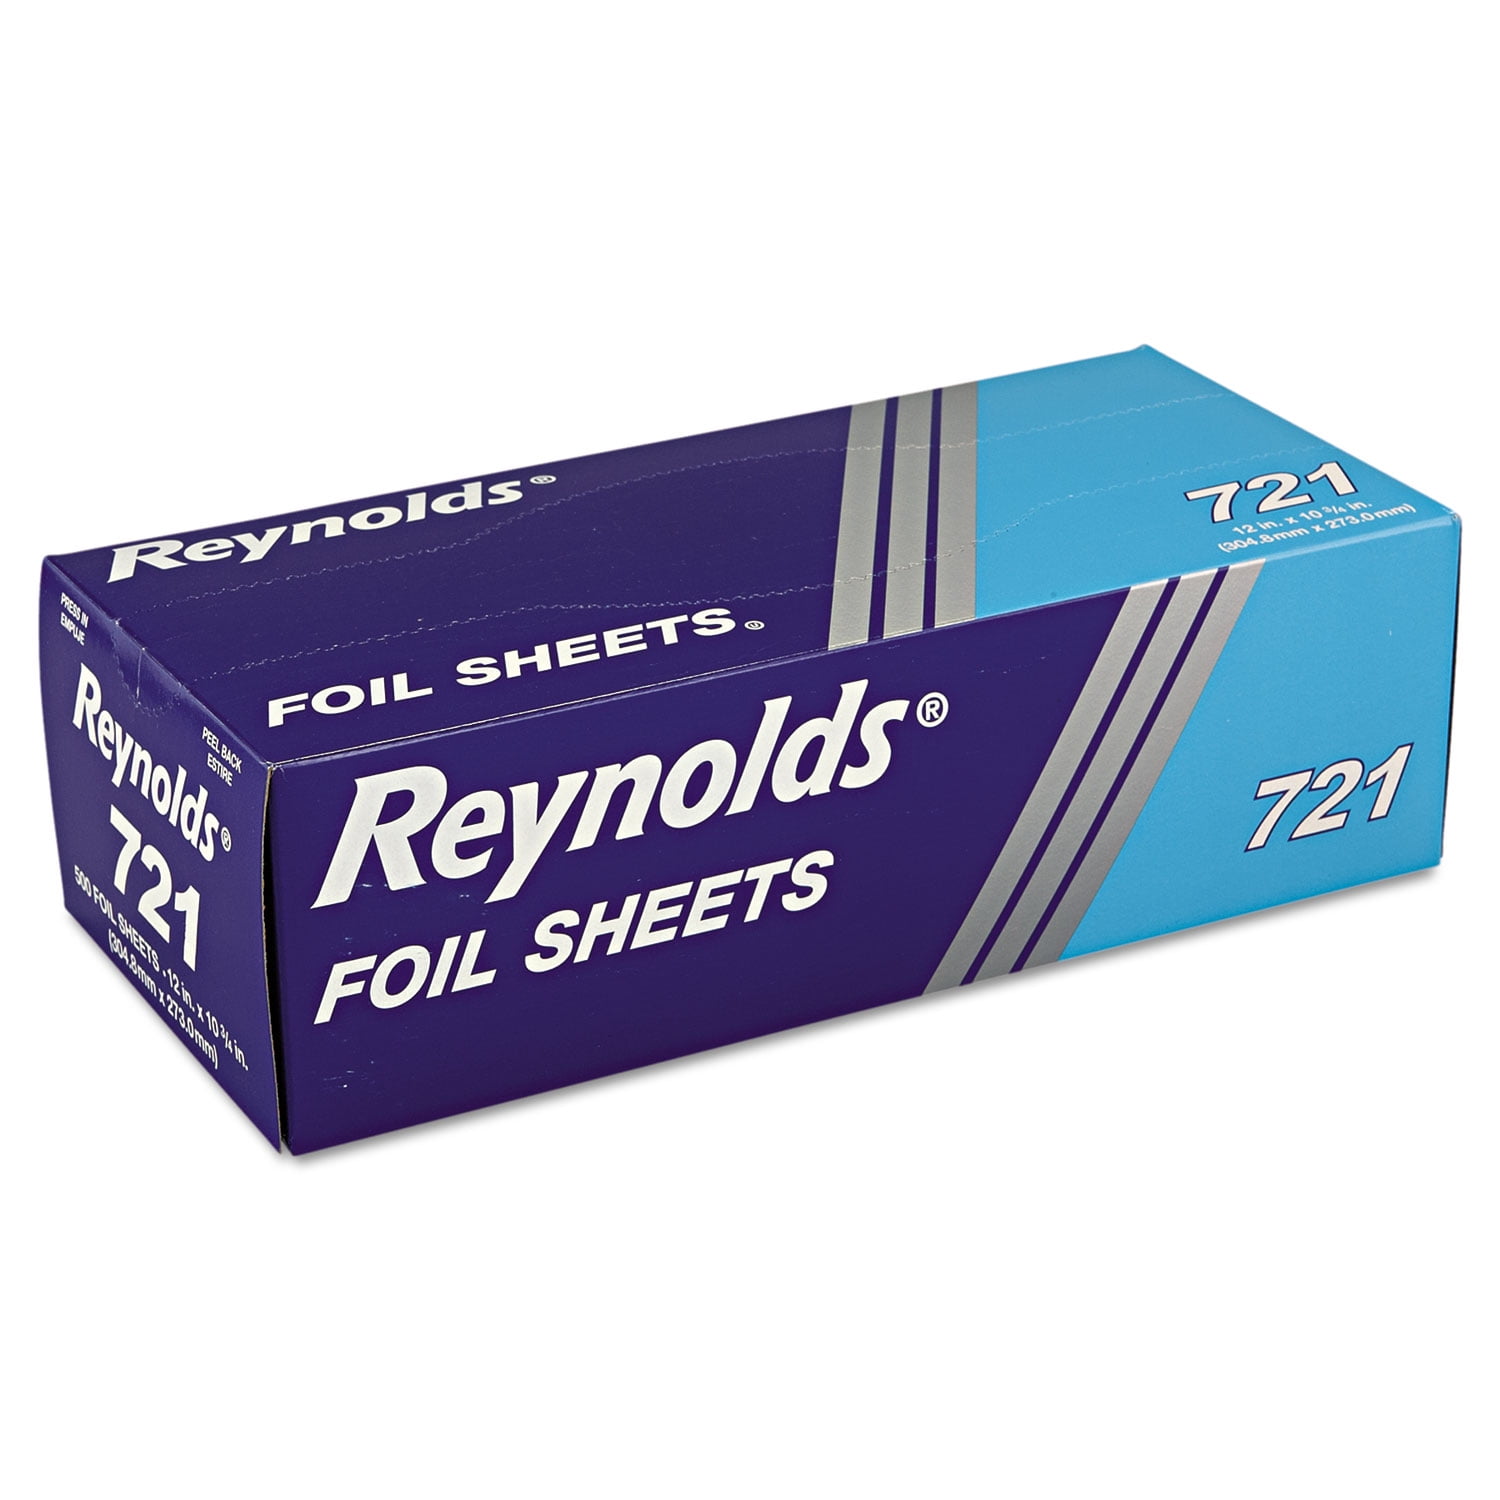 Reynolds Wrap 12 Aluminum Foil, 250 sq. ft (4 ct.) 10900060523